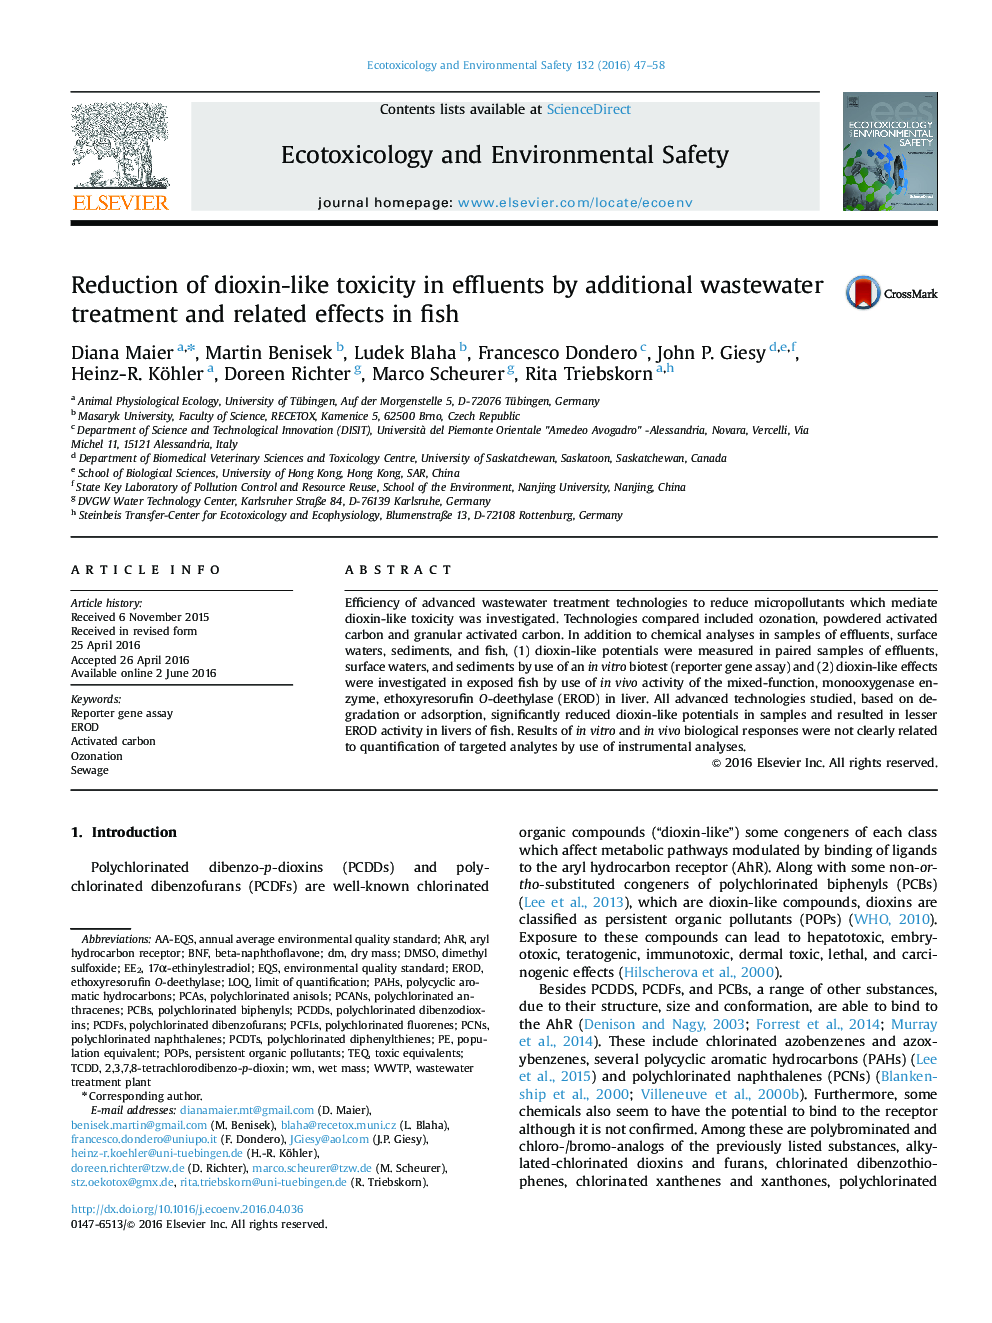 کاهش سمیت دیوکسین مشابه در پساب ها توسط تصفیه فاضلاب اضافی و اثرات مرتبط با آن در ماهی 